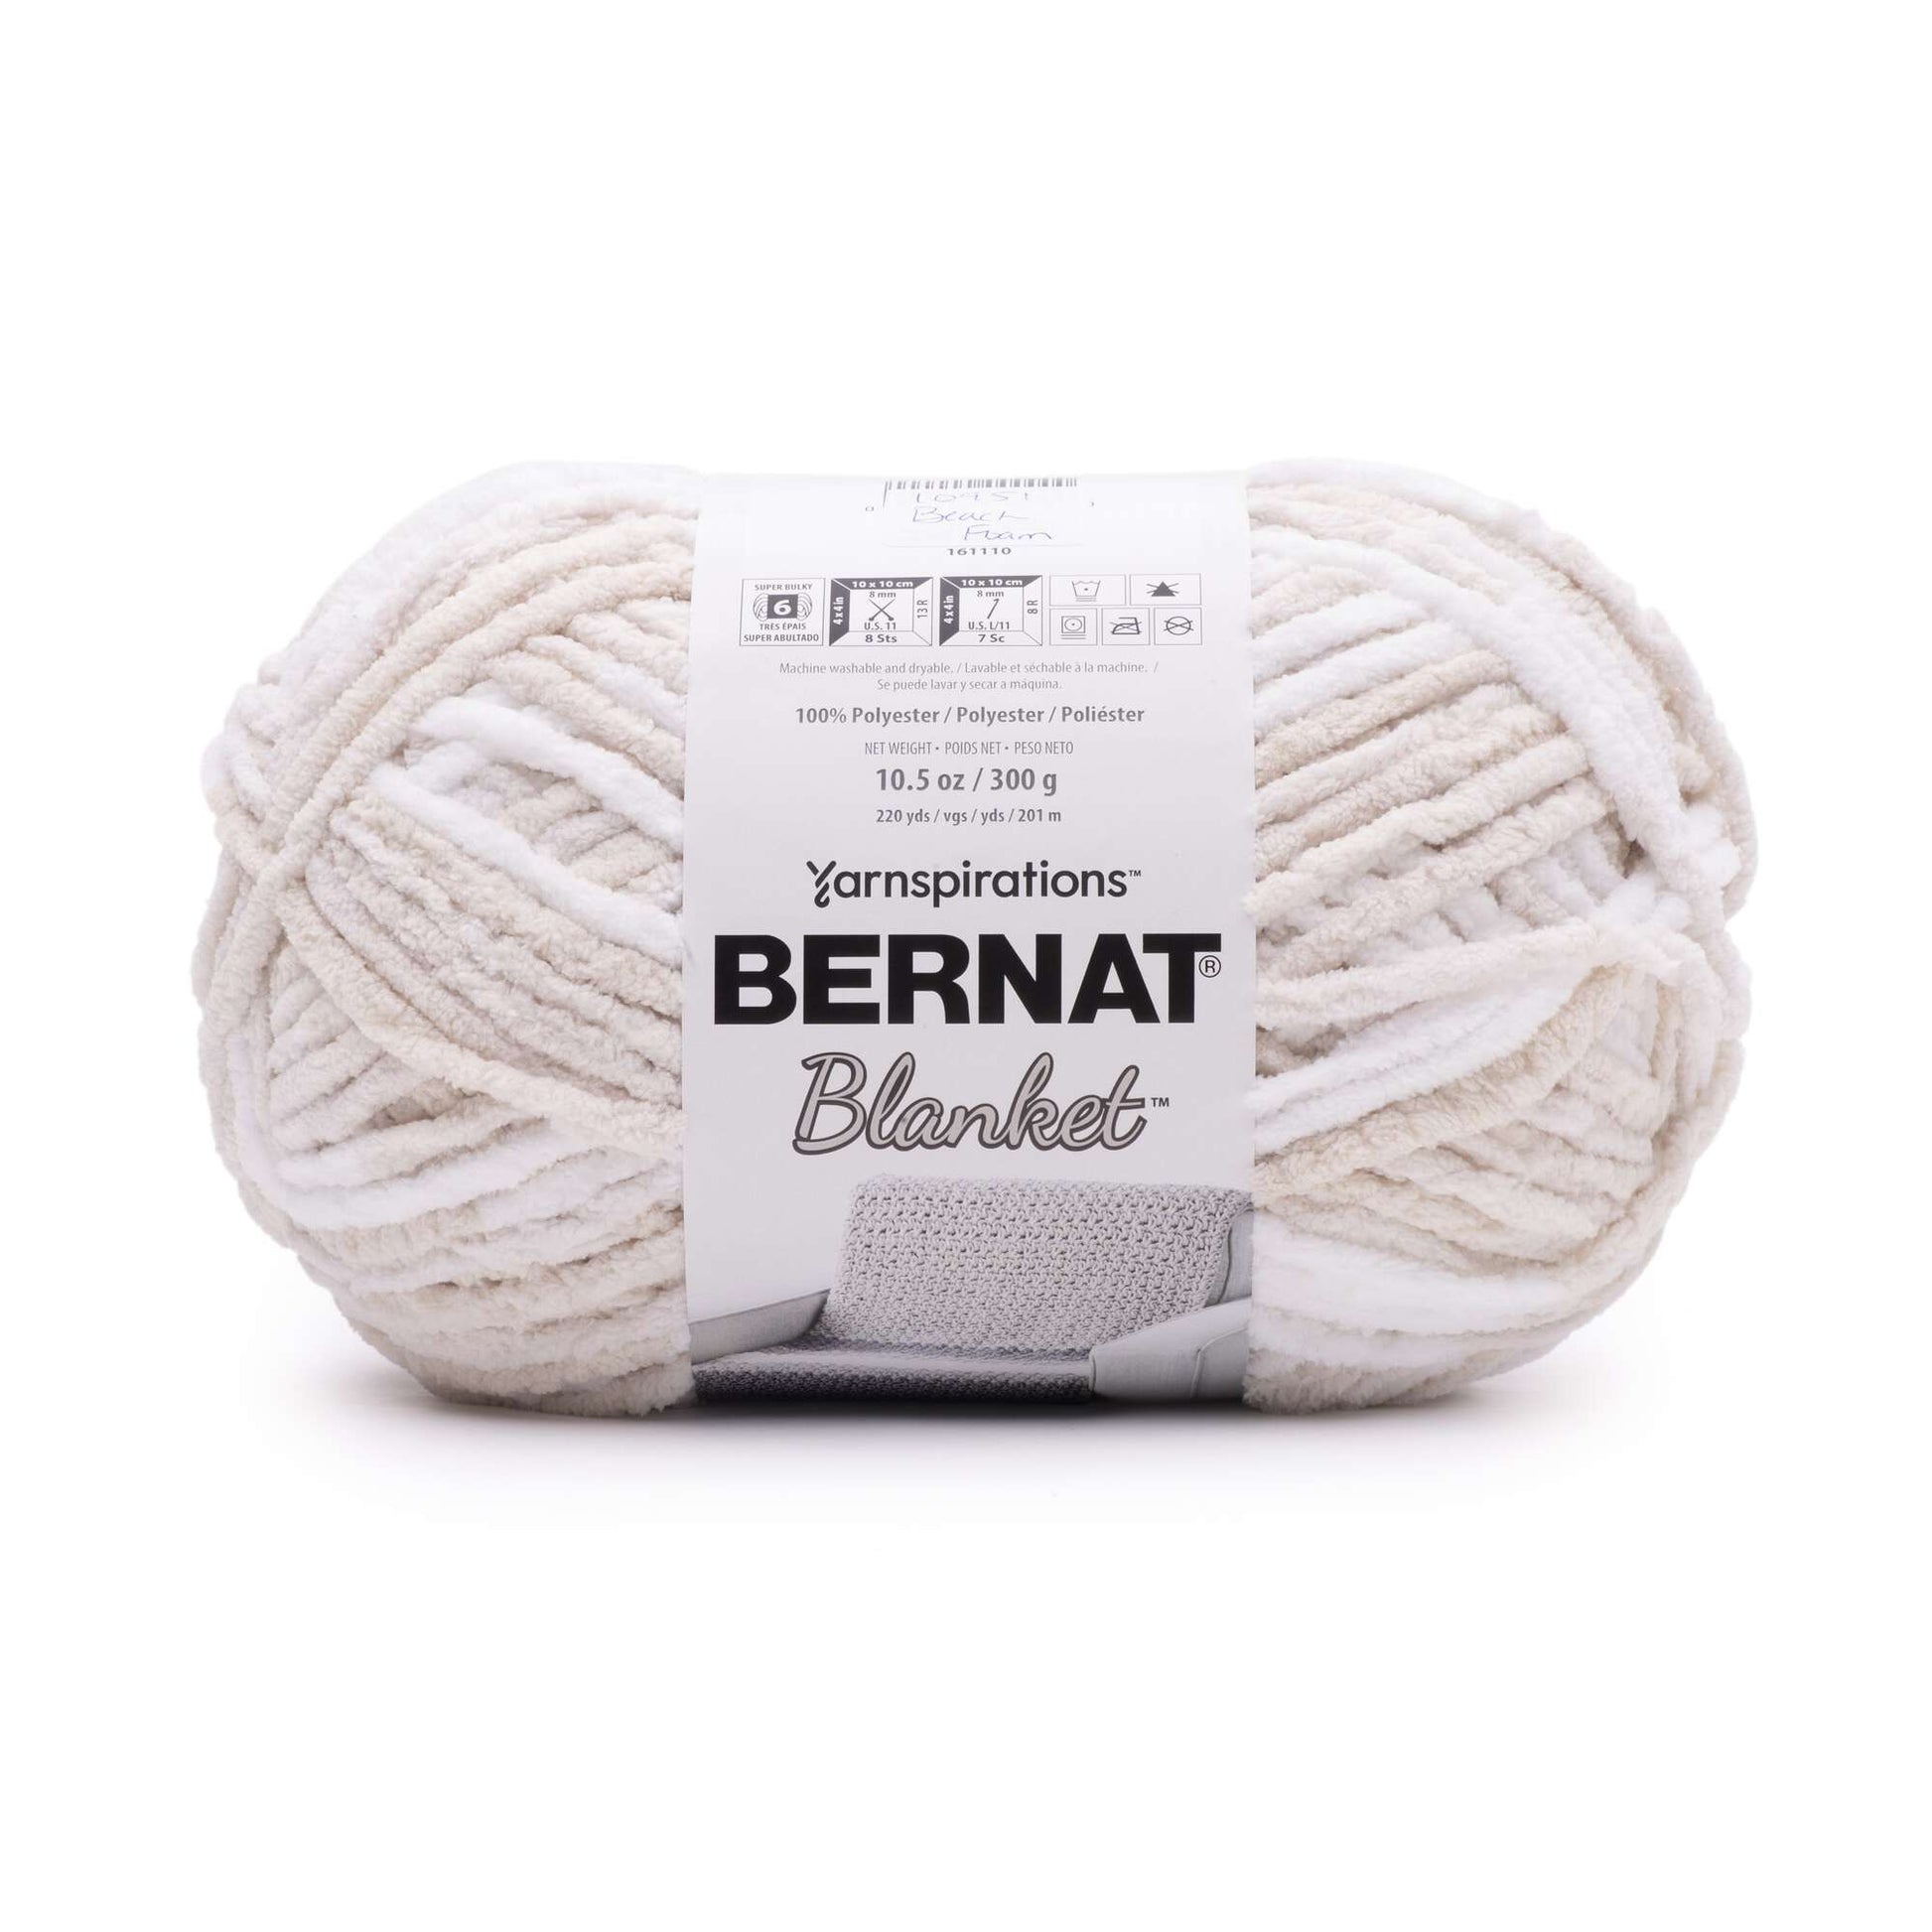 Bernat Blanket Yarn (300g/10.5oz) Beach Foam